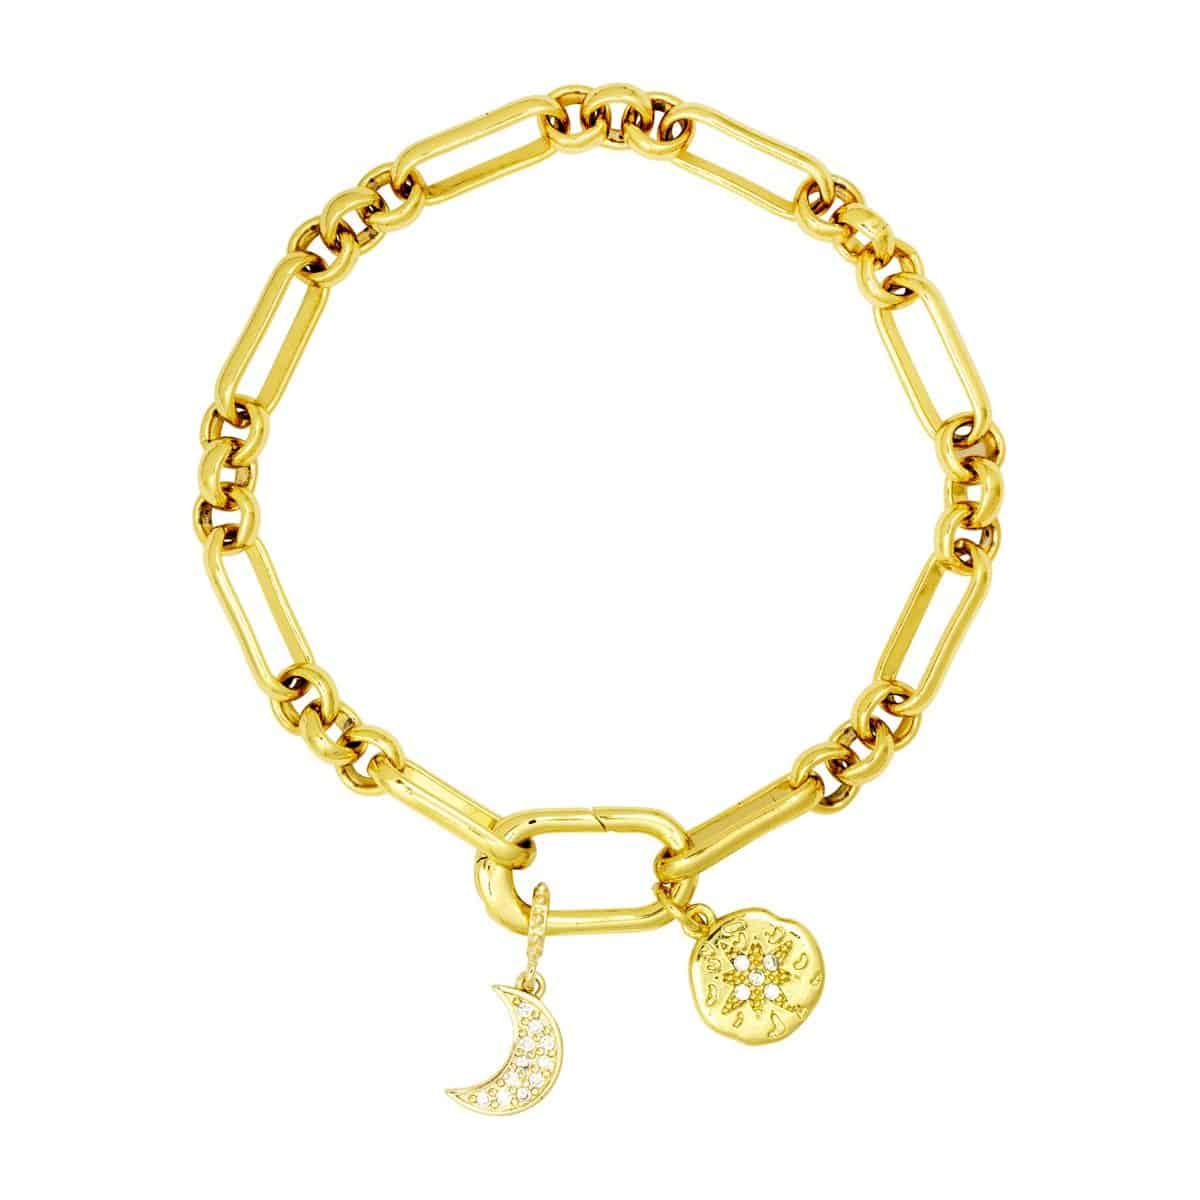 gold Piaf chain bracelet